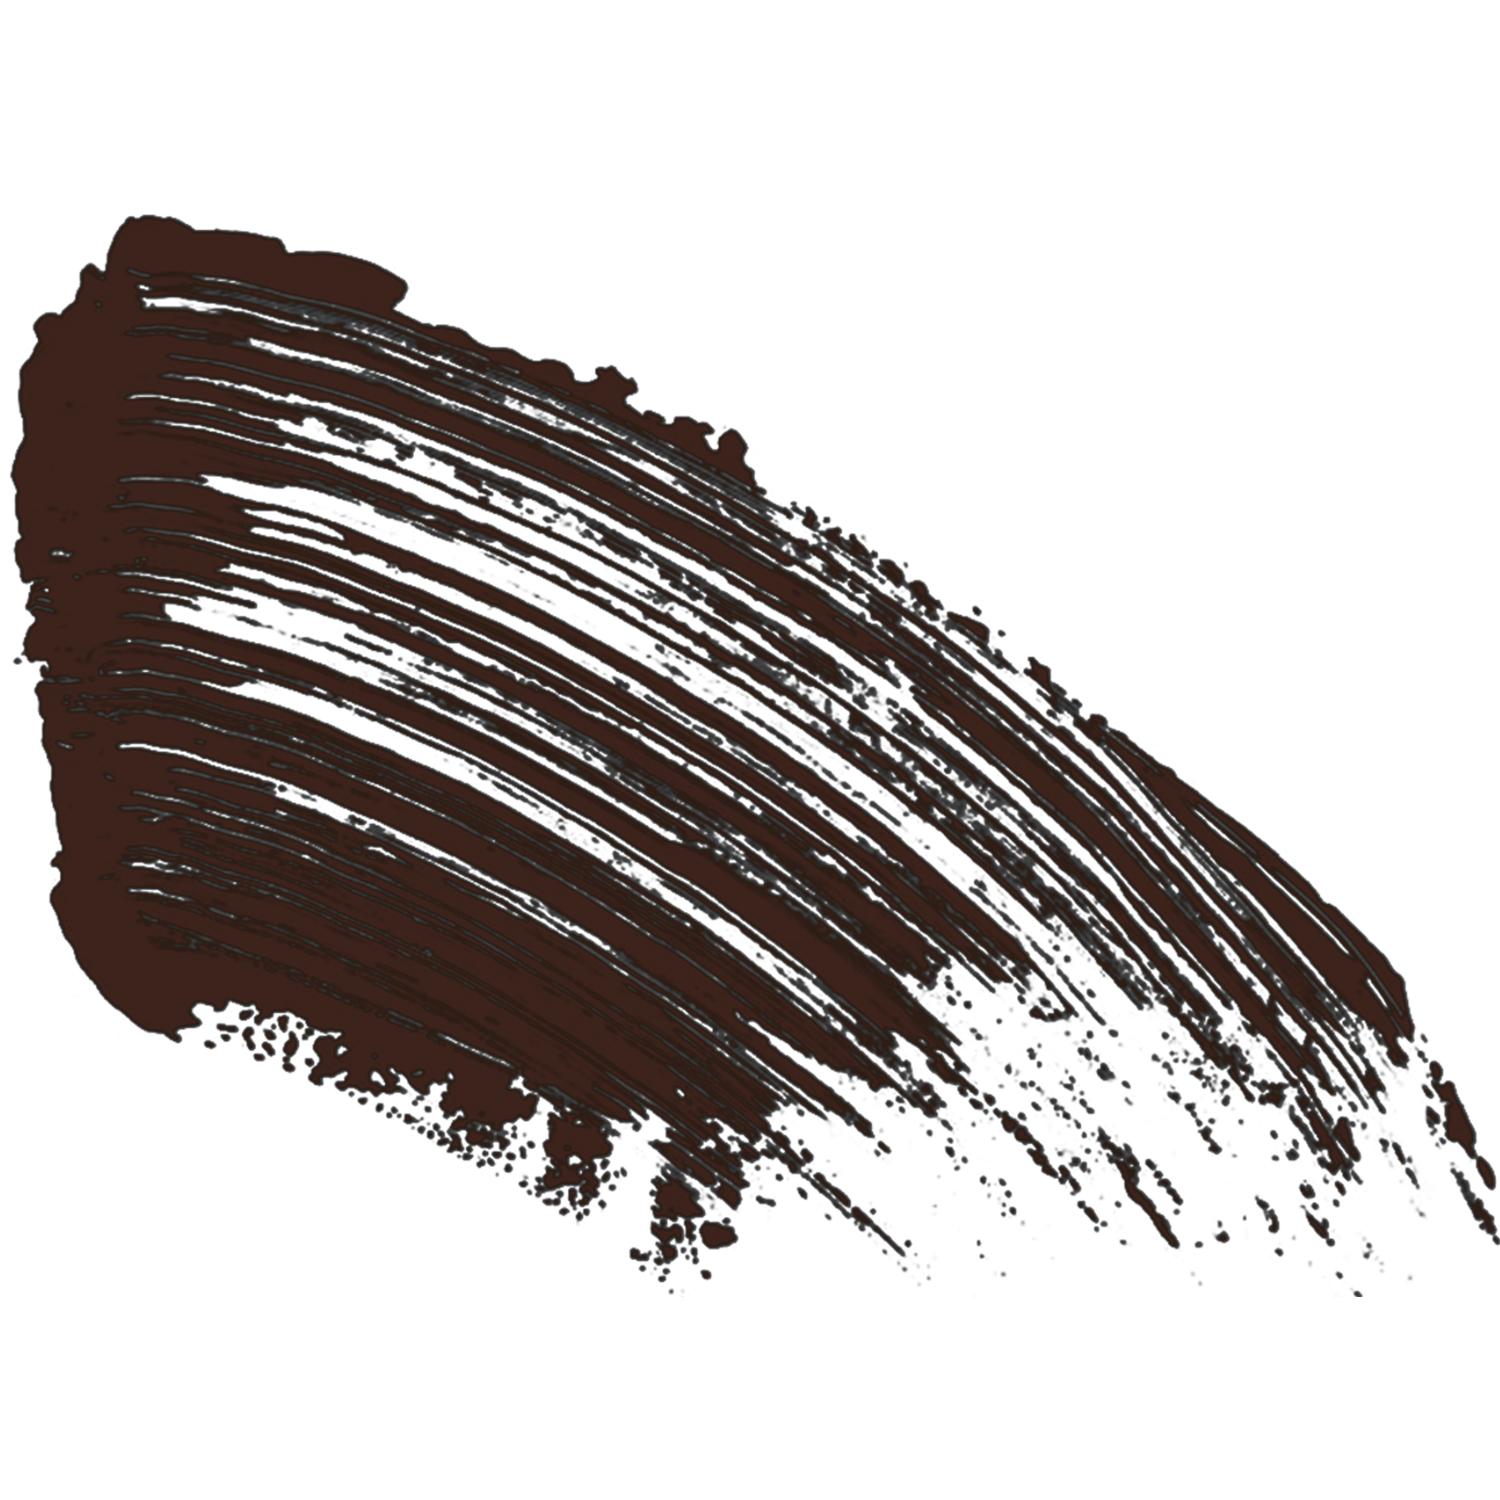 Тушь для ресниц Vivienne Sabo CABARET PREMIERE с эффектом сценического объёма тон 05 коричневая 9 мл - фото 6